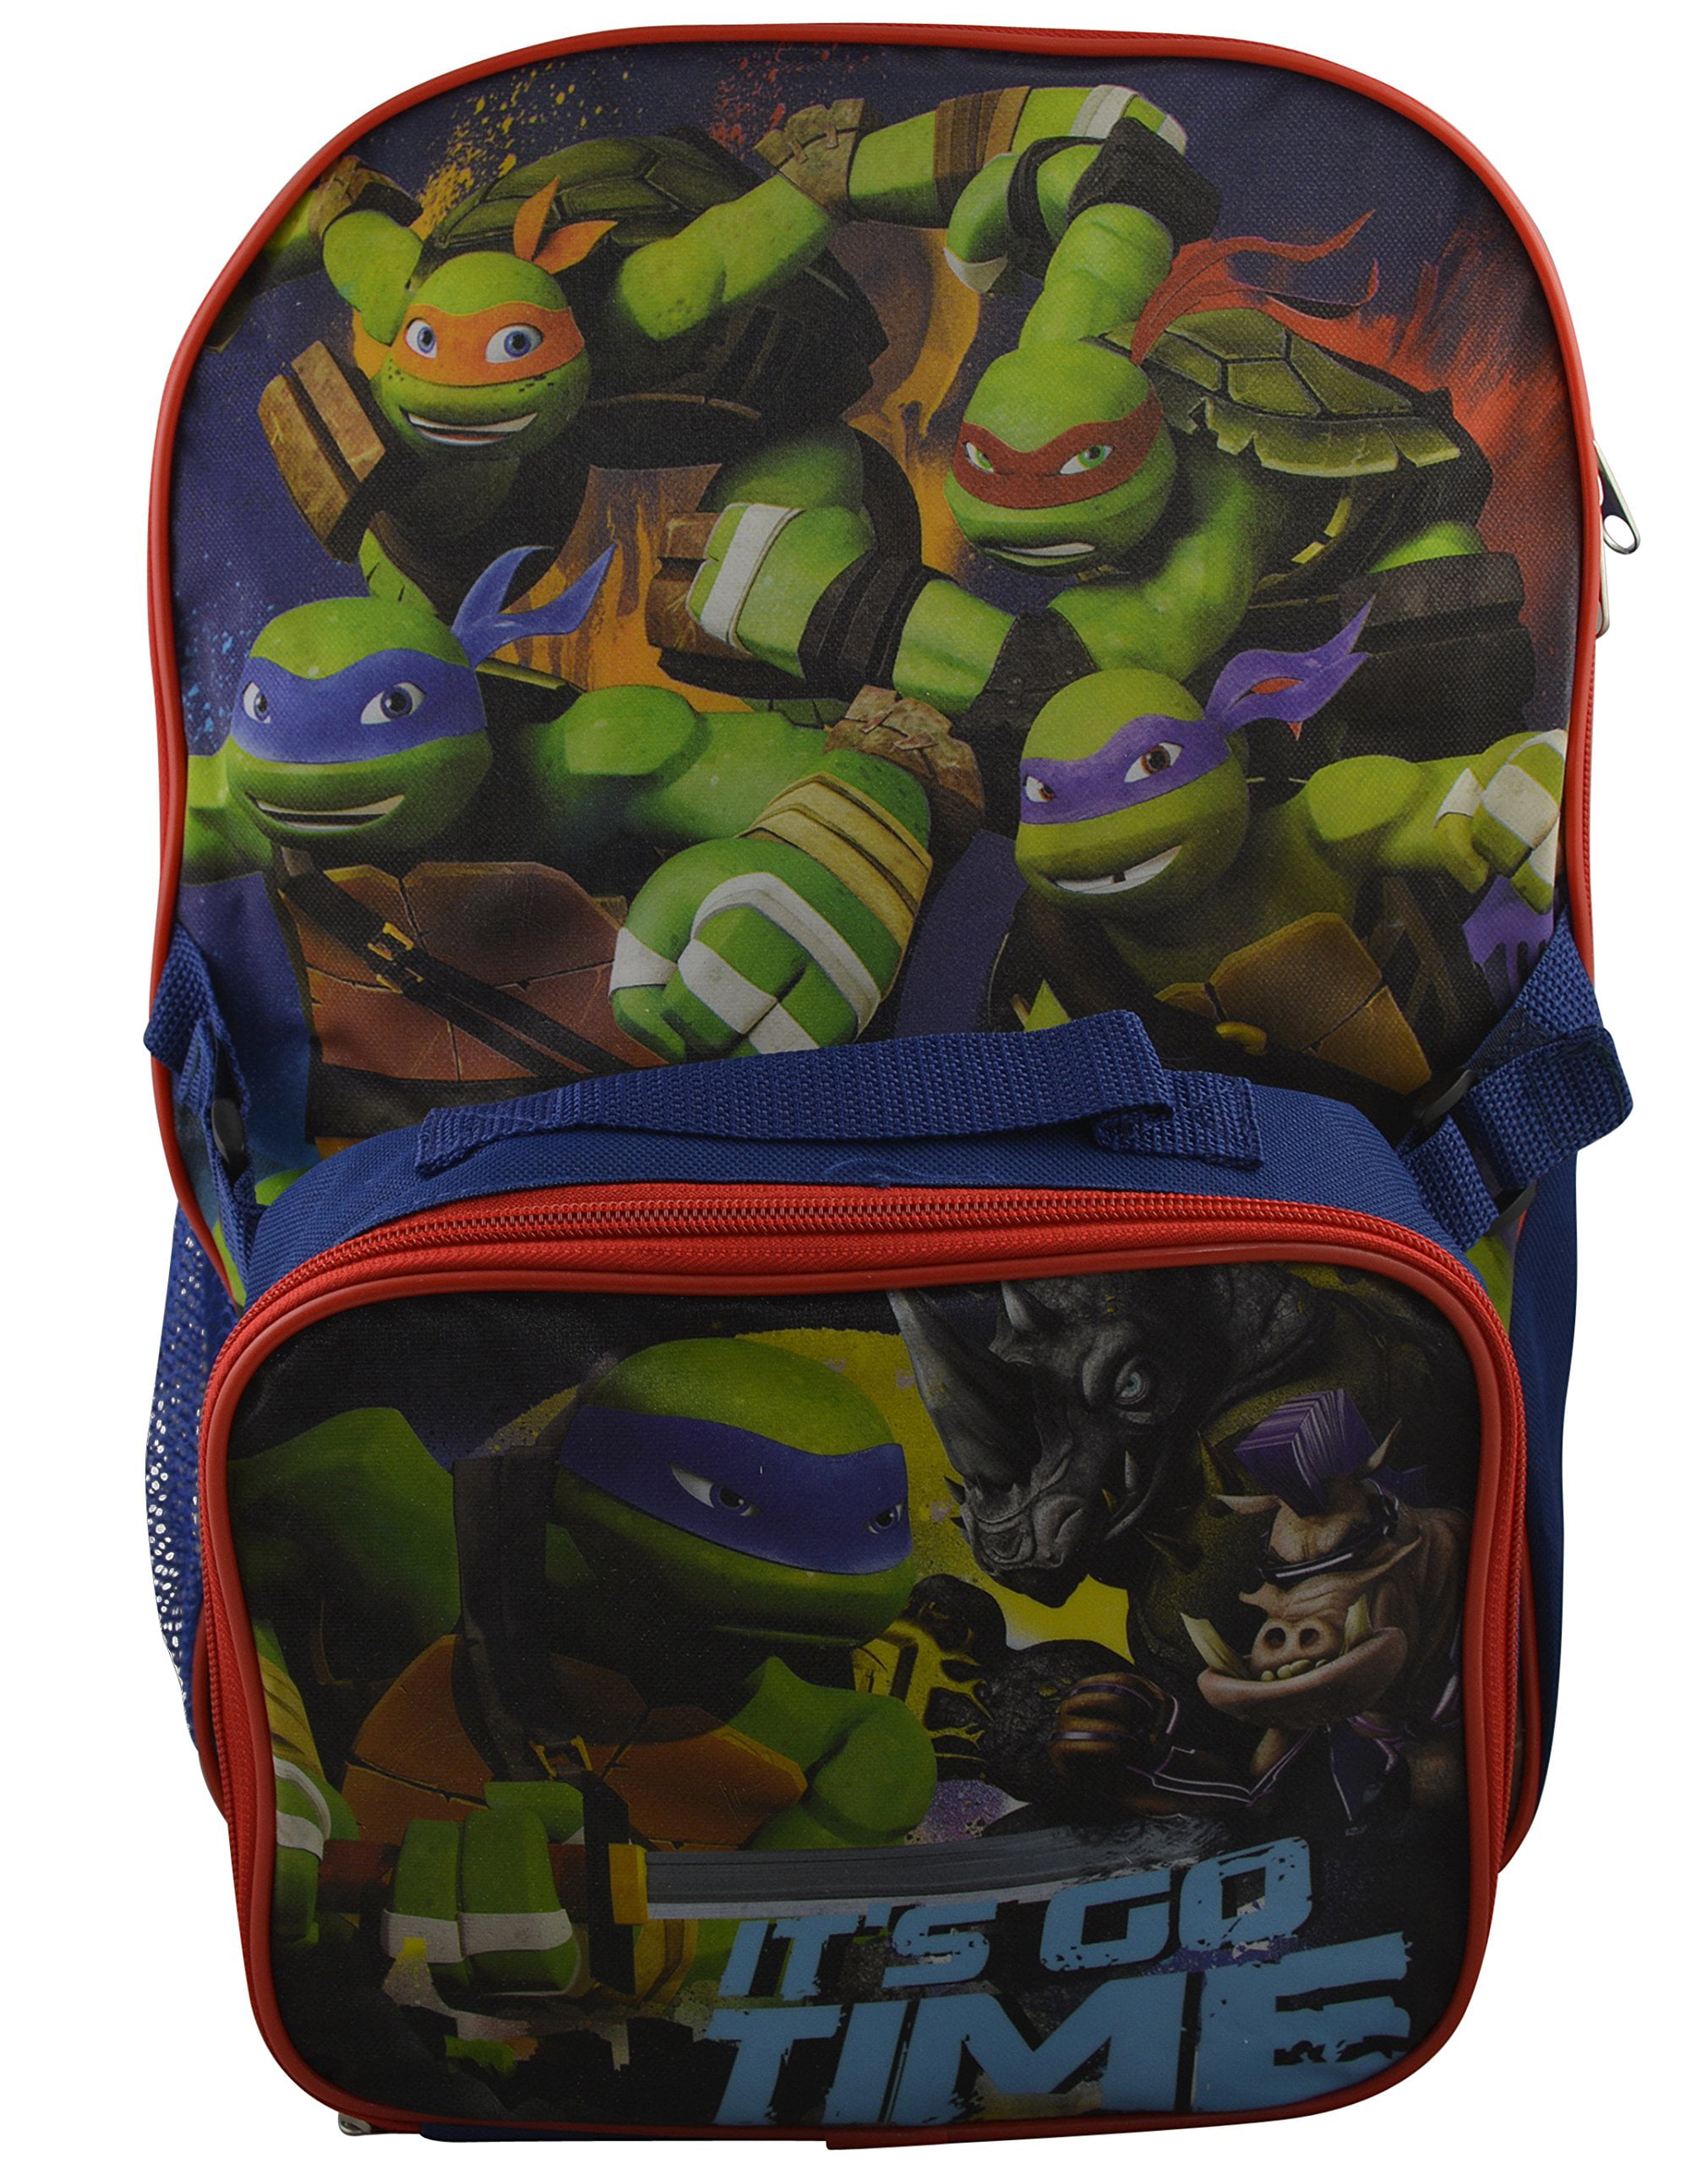 Teenage Mutant Ninja Turtles 16" Kids School Backpack Boys Book Bag Nickelodeon